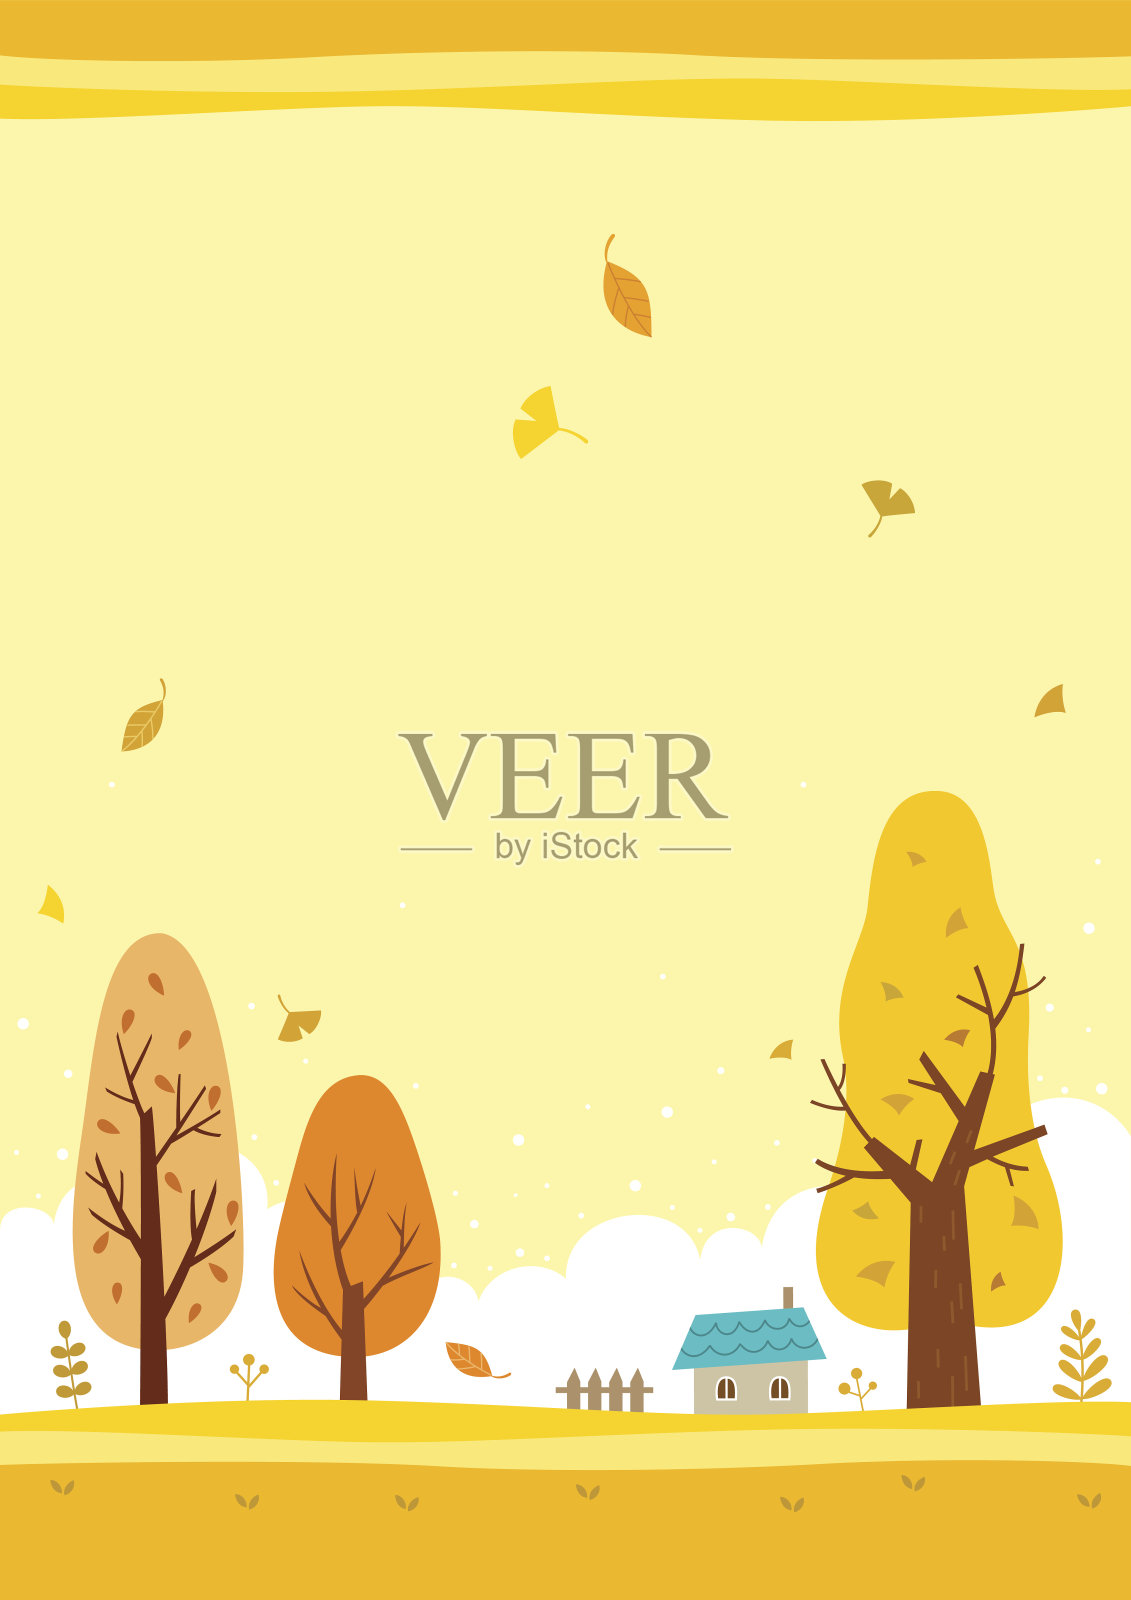 秋天的风景与黄色的天空和黄色的树木插画图片素材